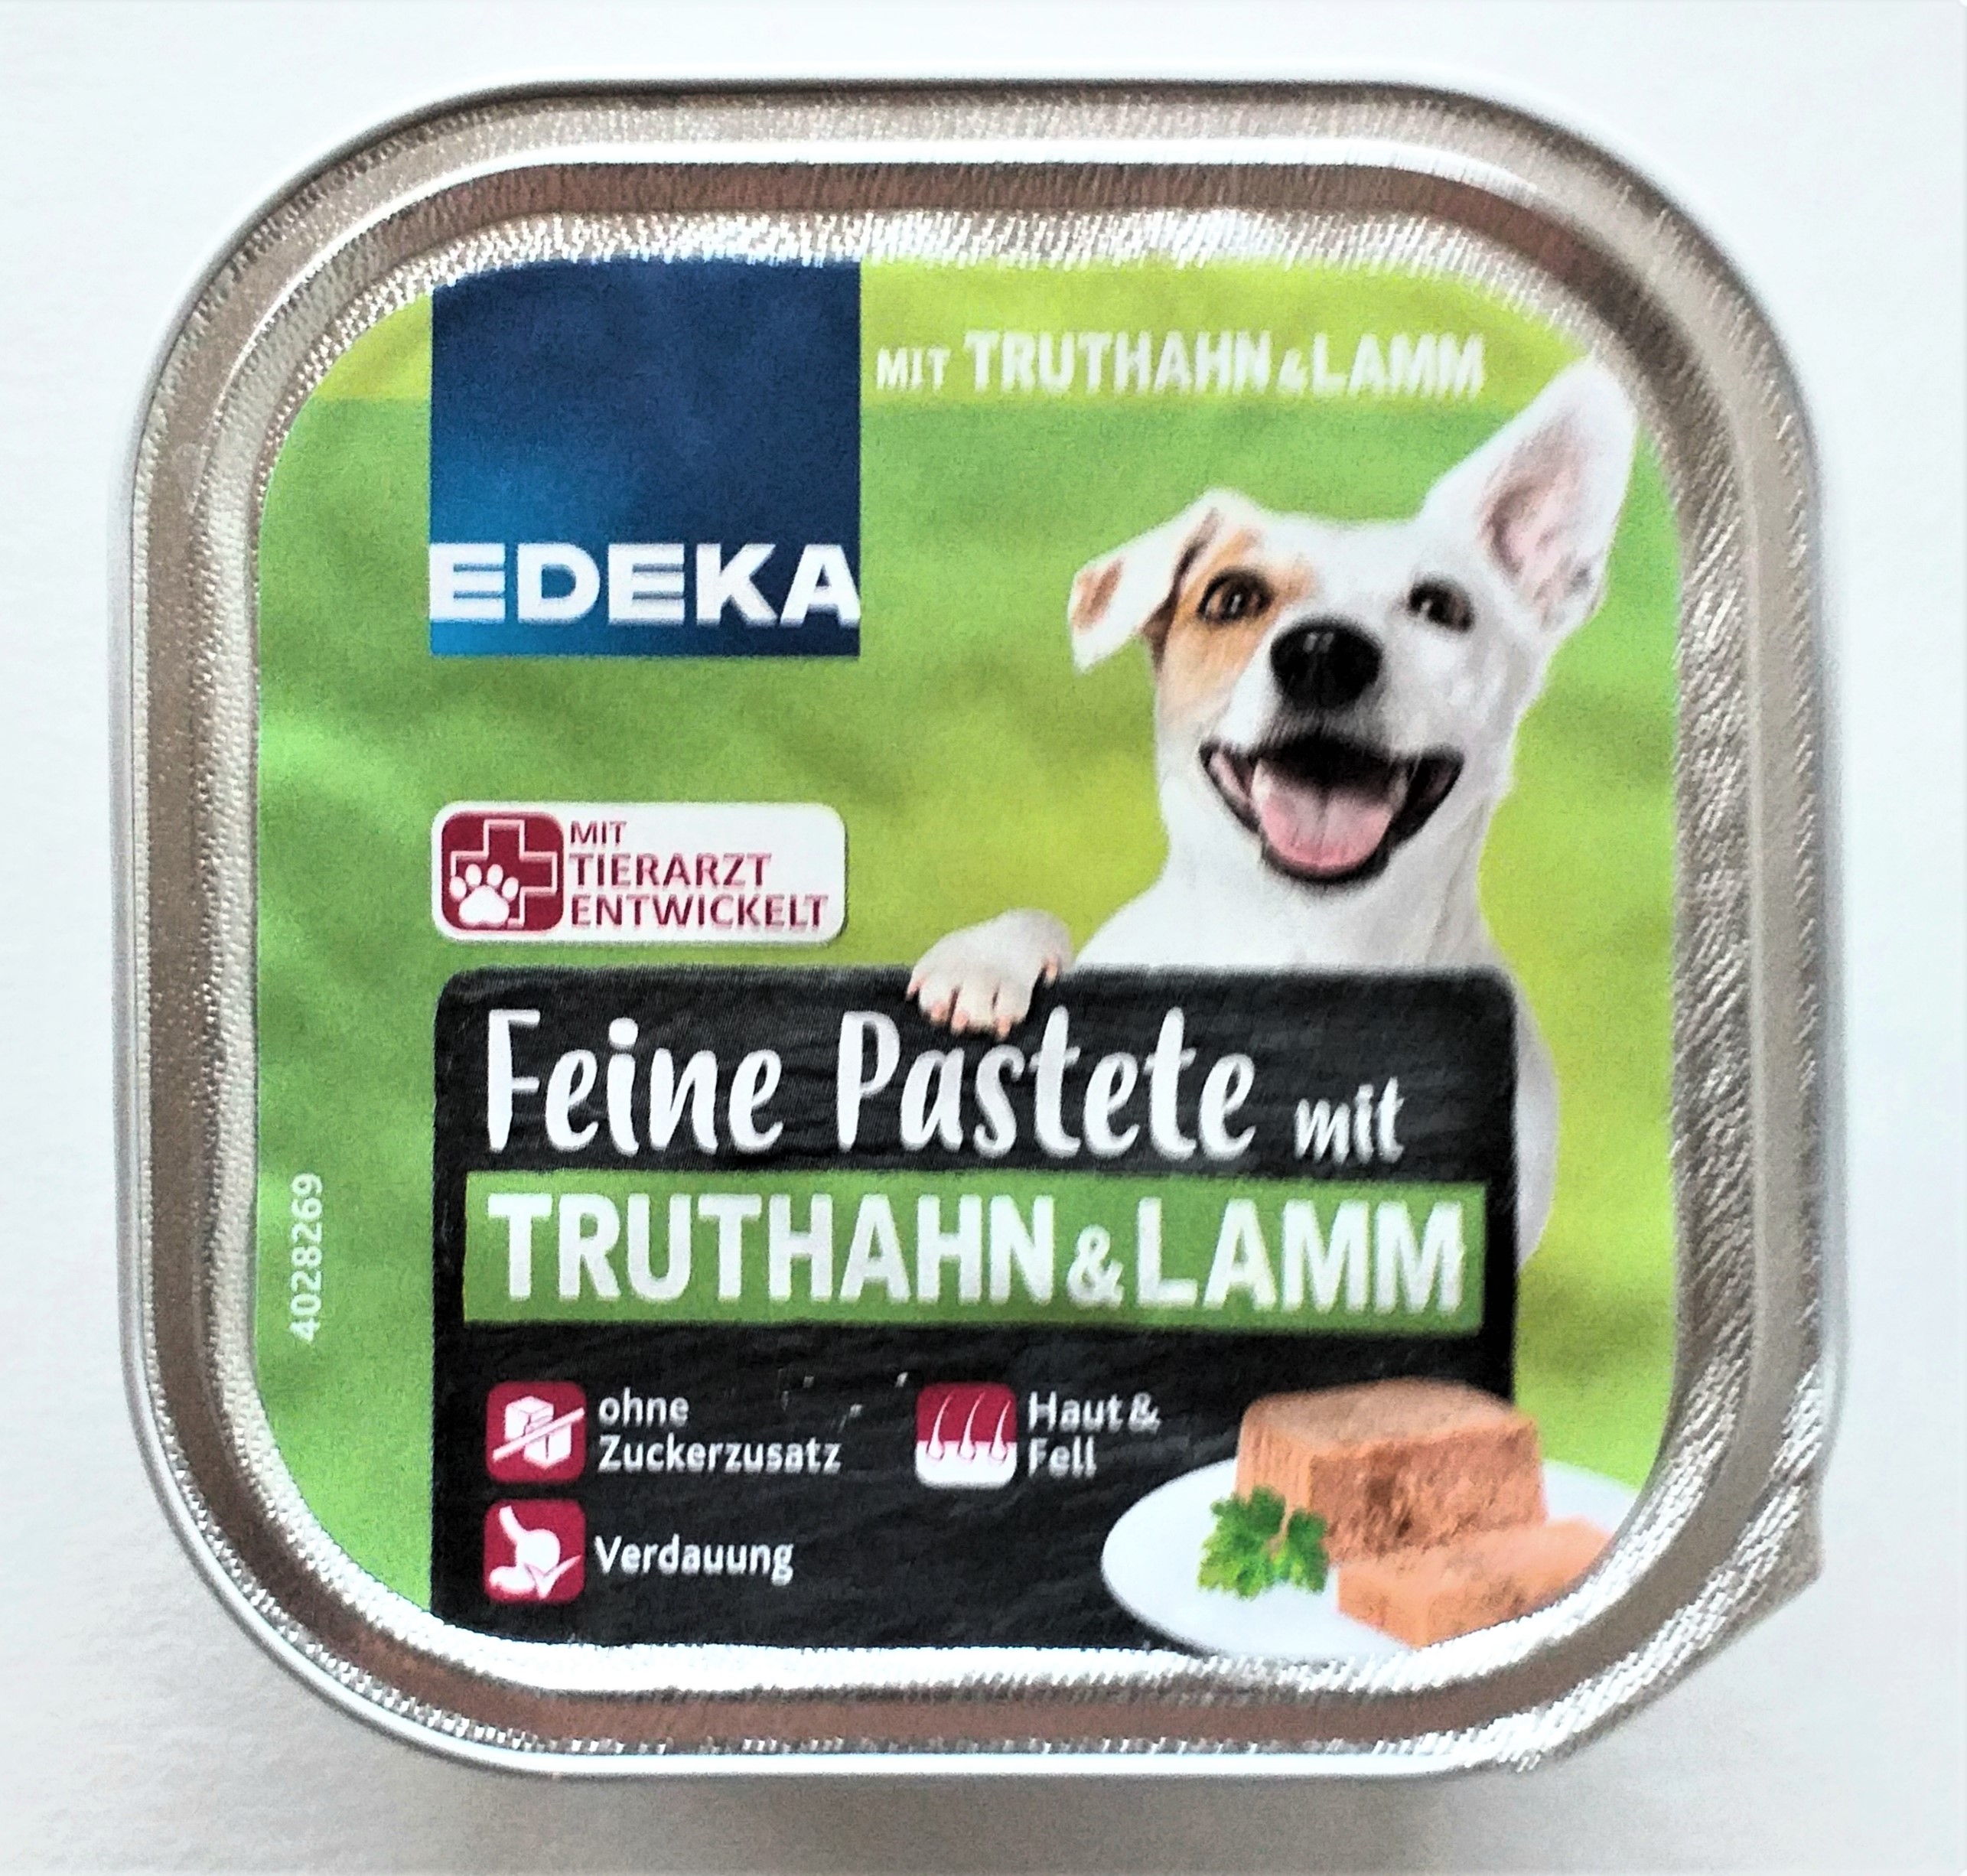 EDEKA Feine Pastete Truthahn und Lamm 11 x 150g Packung